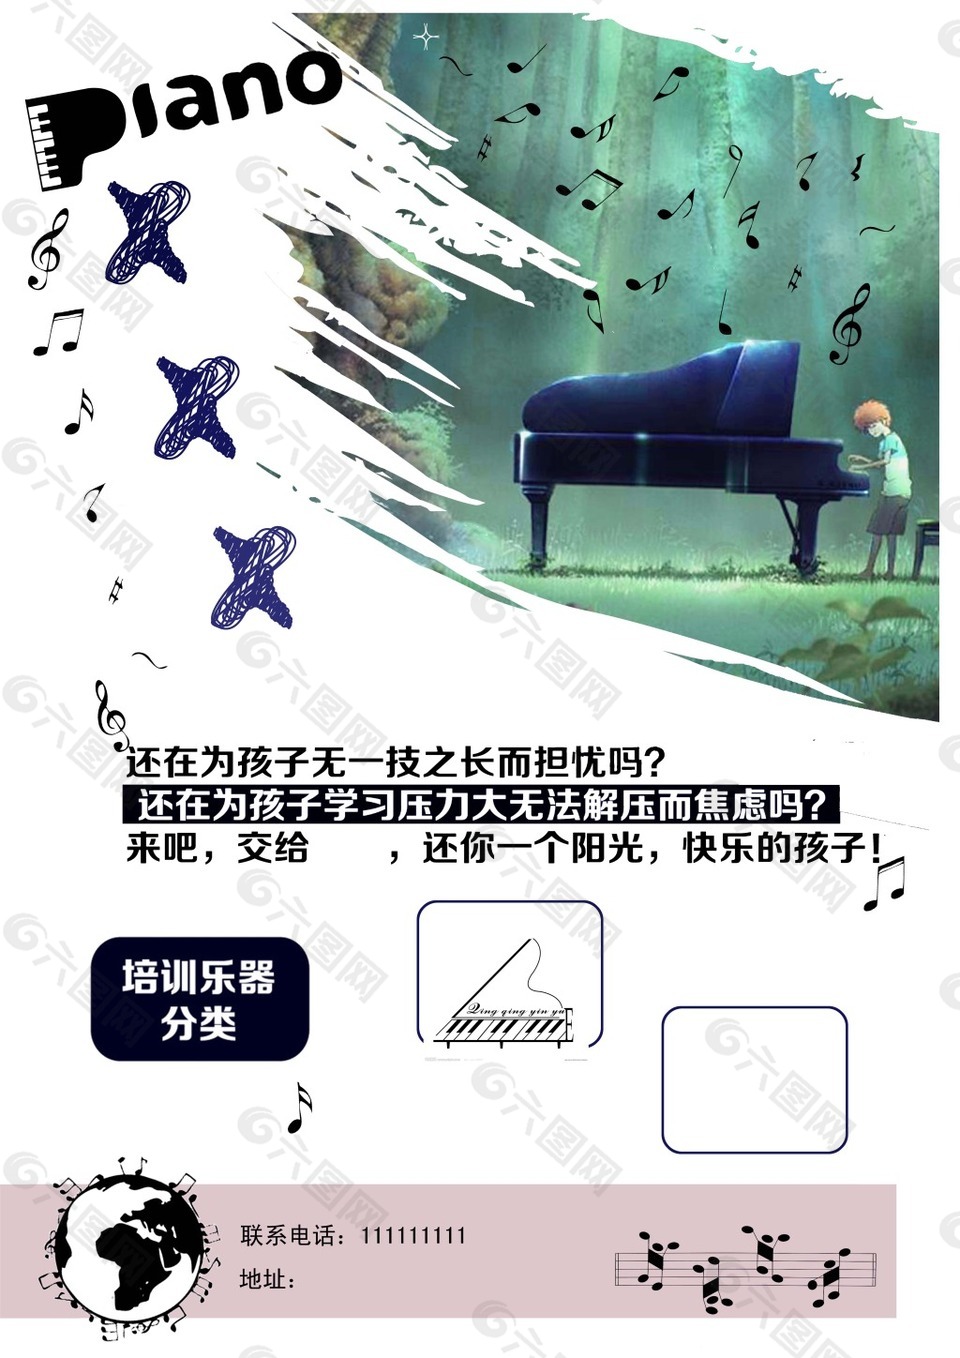 钢琴培训班宣传页